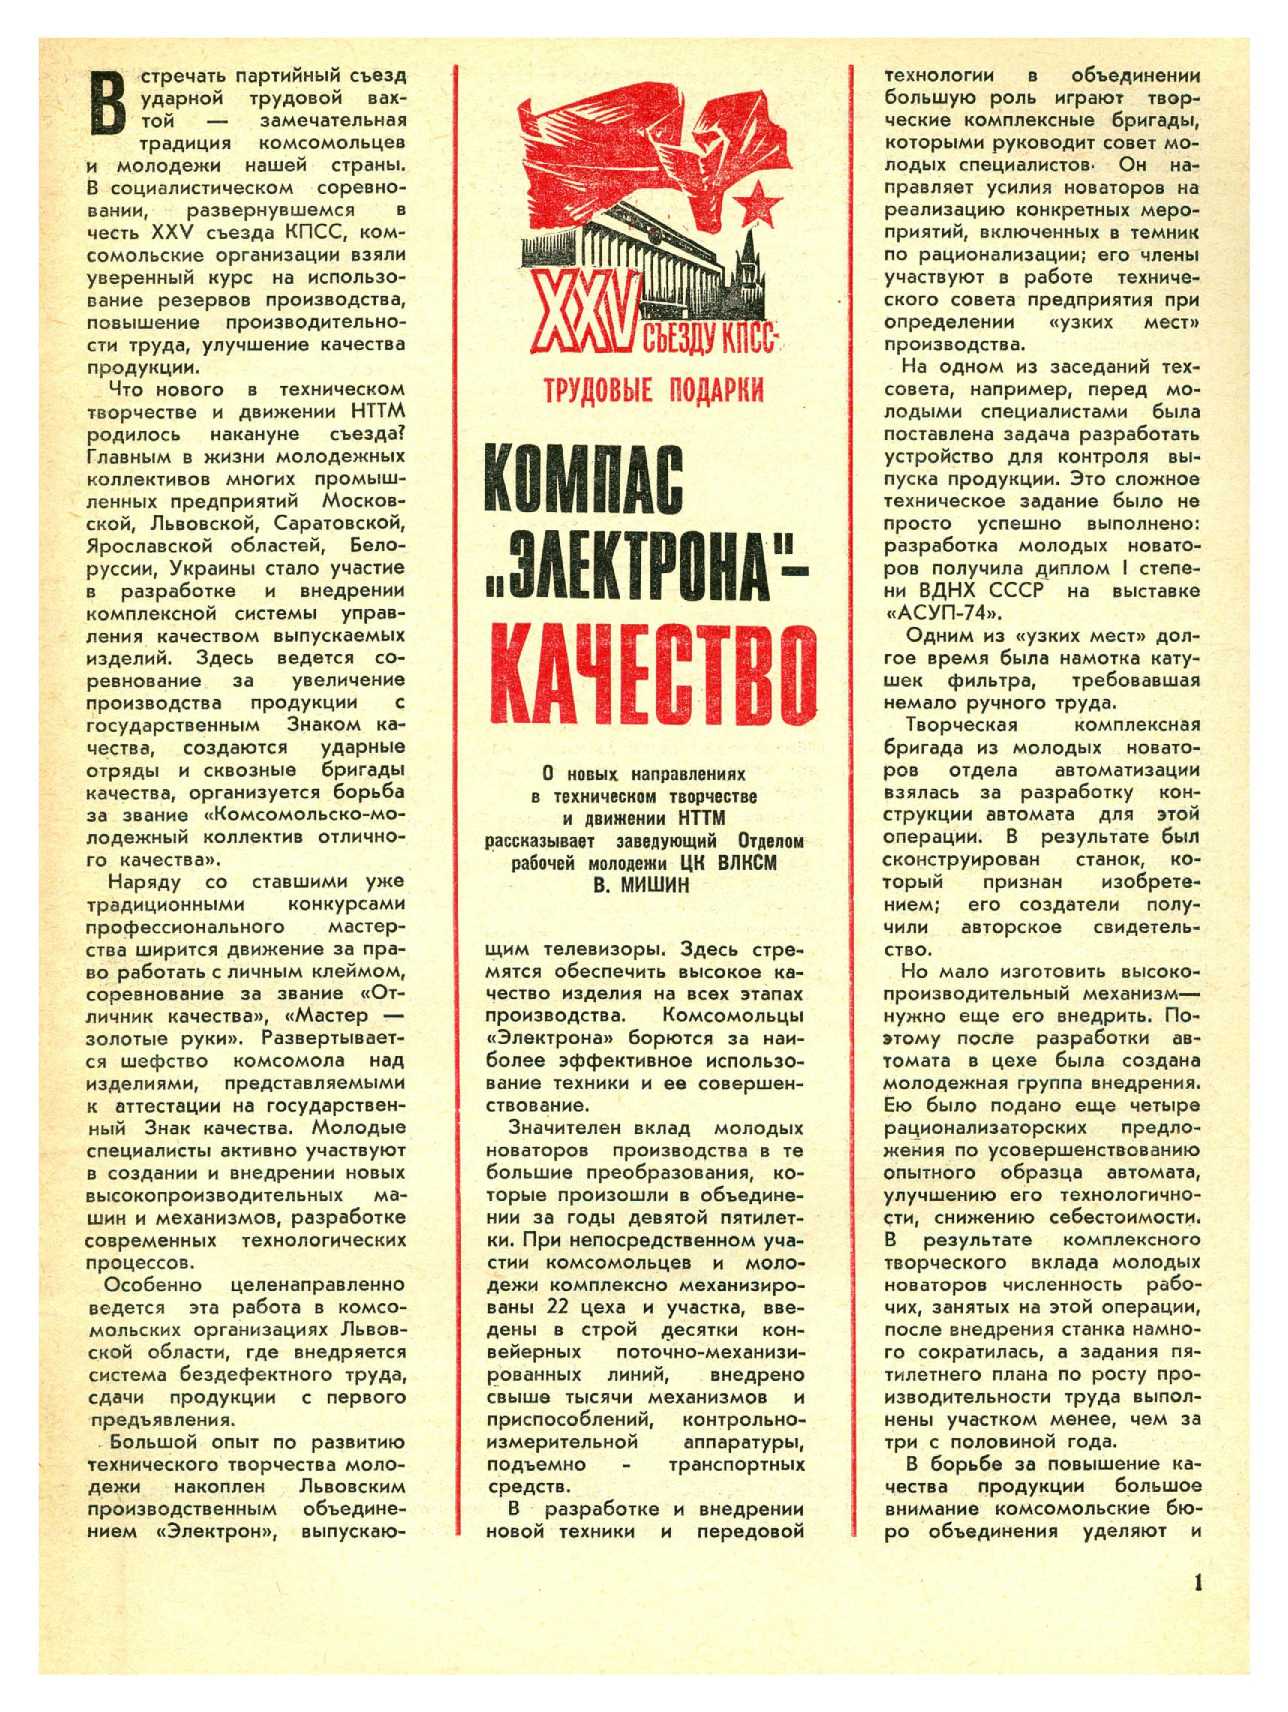 МК 2, 1976, 1 c.